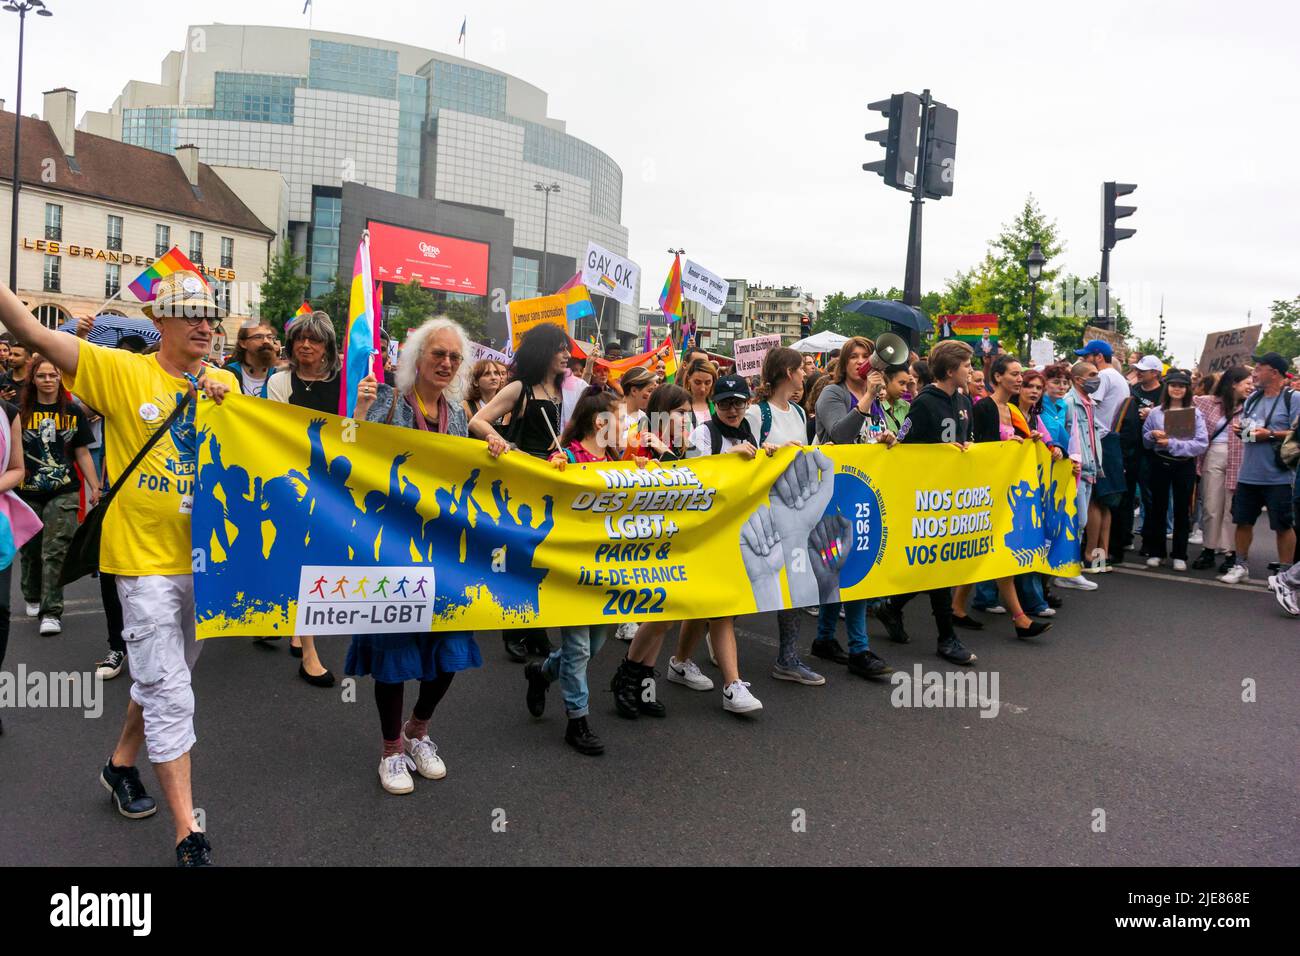 Paris, France, foule nombreuse, marche dans la gay Pride / Marche LGBTQI, avec bannière de protestation, solidarité Ukraine, marche pour les droits des homosexuels Banque D'Images